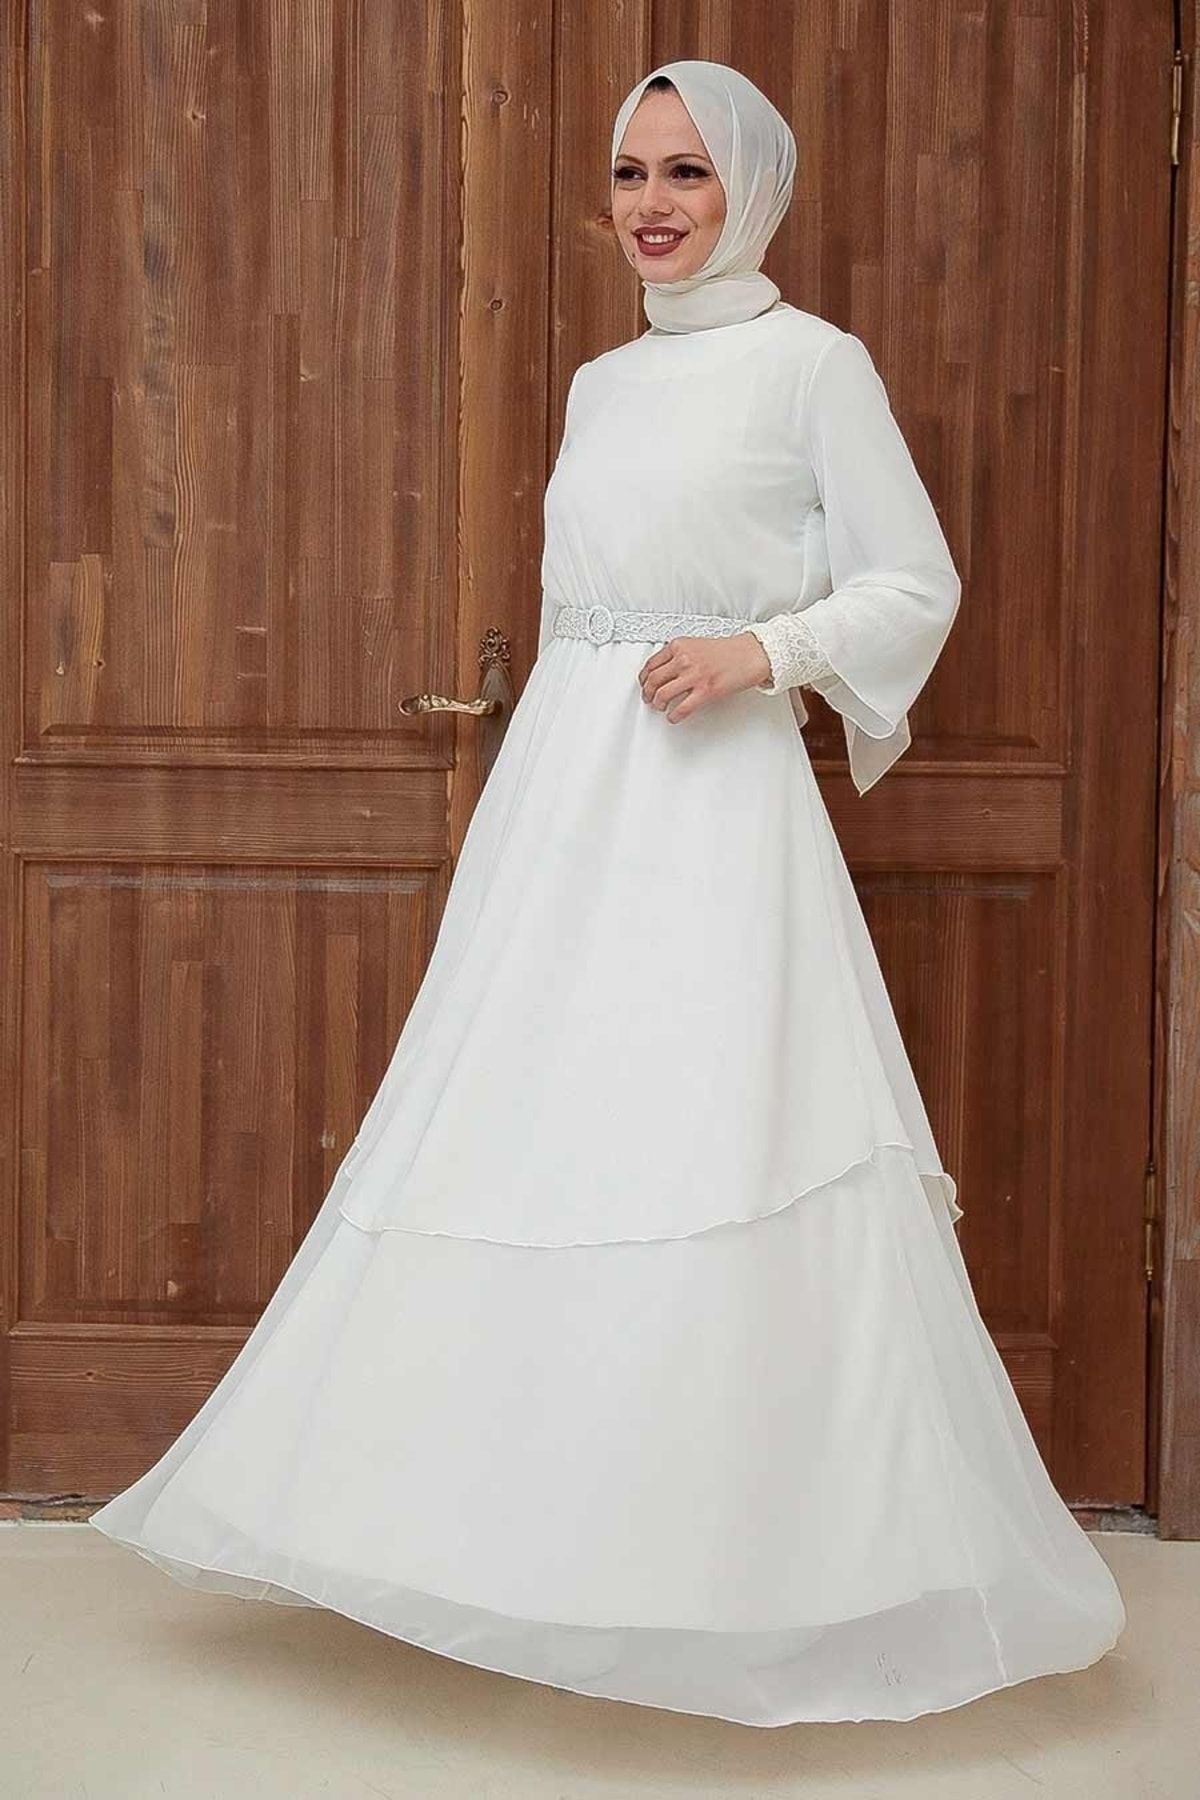 Neva Style Tesettürlü Abiye Elbise - Pul Payet Detaylı Ekru Tesettür Abiye Elbise 5489e